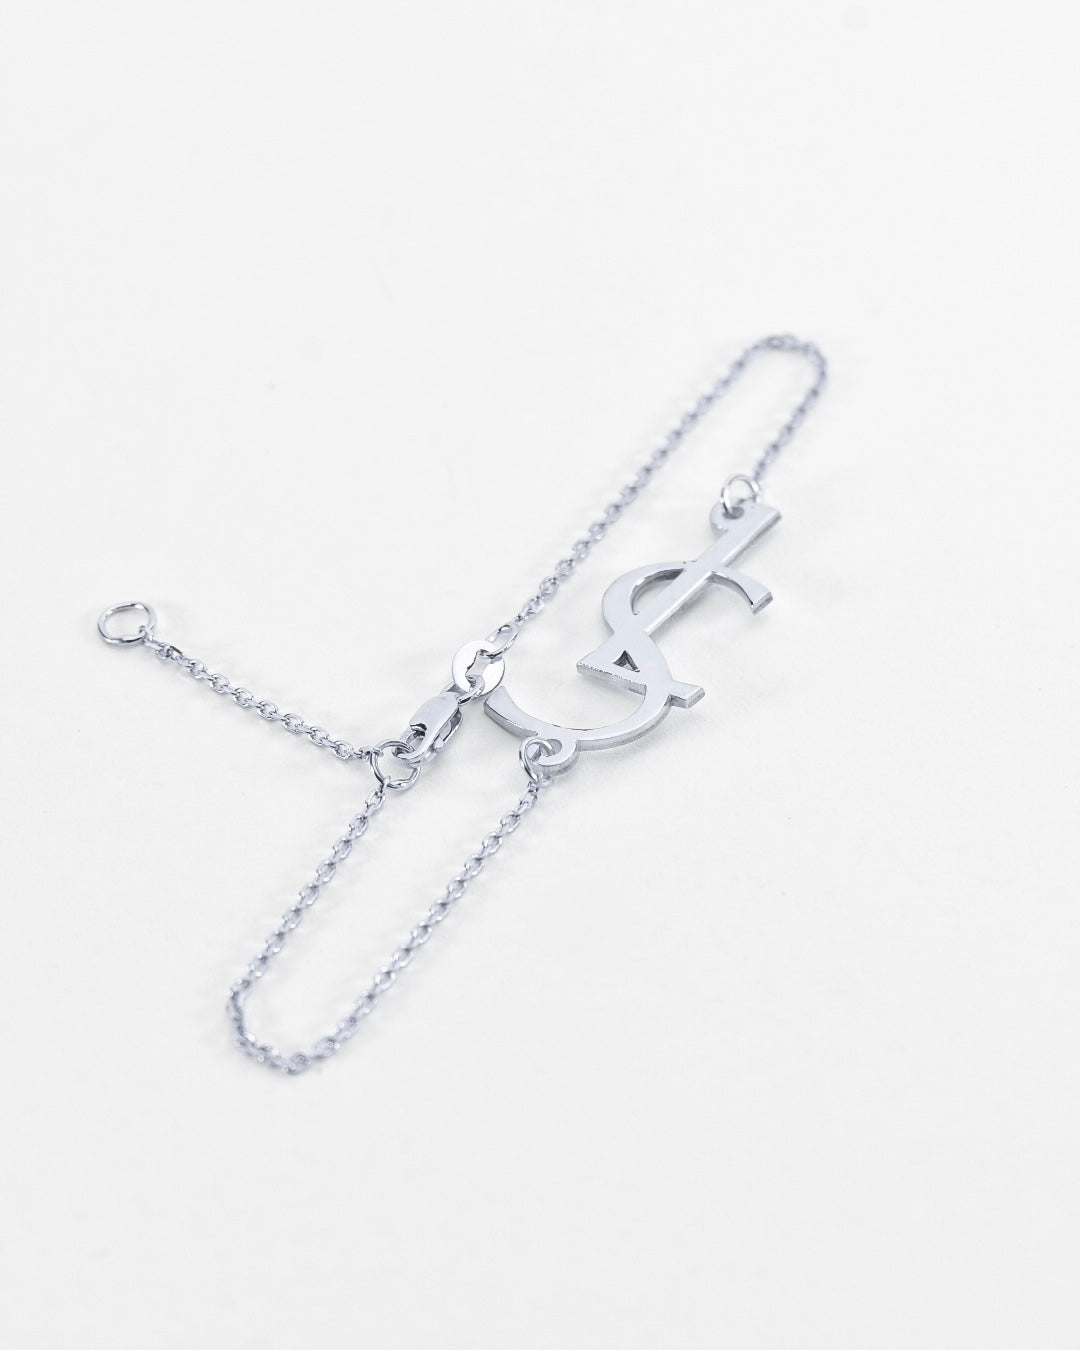 Double Chain Monogram Bracelet, Initials Bracelet or Monogram Anklet (Order  Any Initials) - Sterling Silver